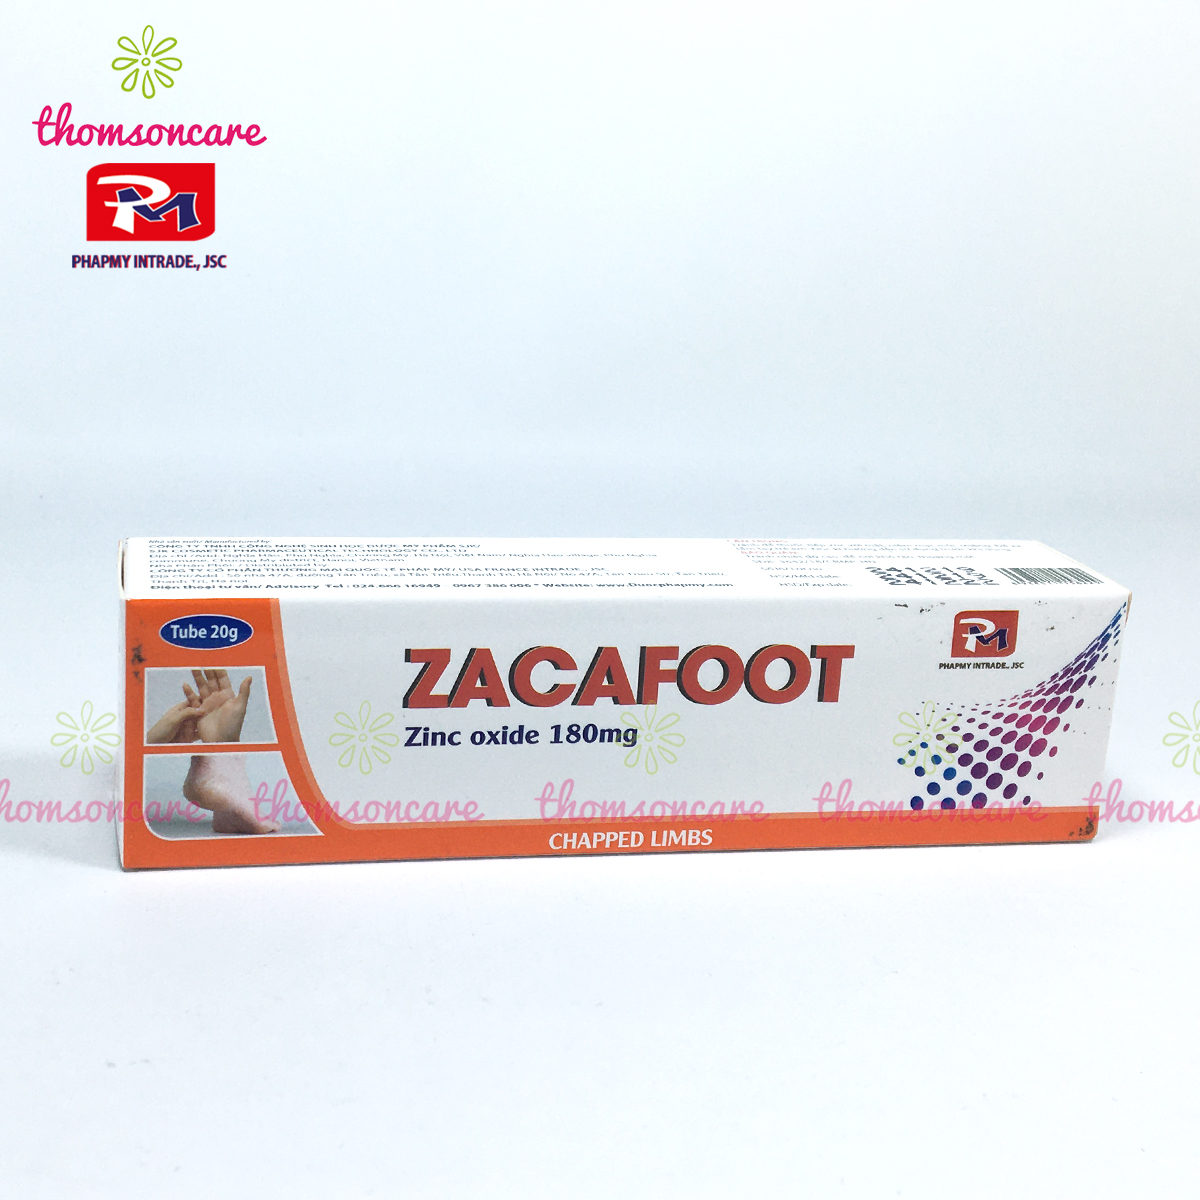 Zacafoot - Kem dưỡng ẩm, giảm khô, nẻ, nứt gót chân, tay - Từ Kẽm Oxyd, tinh chất nghệ Nano Curcumin, vaseline và mật ong